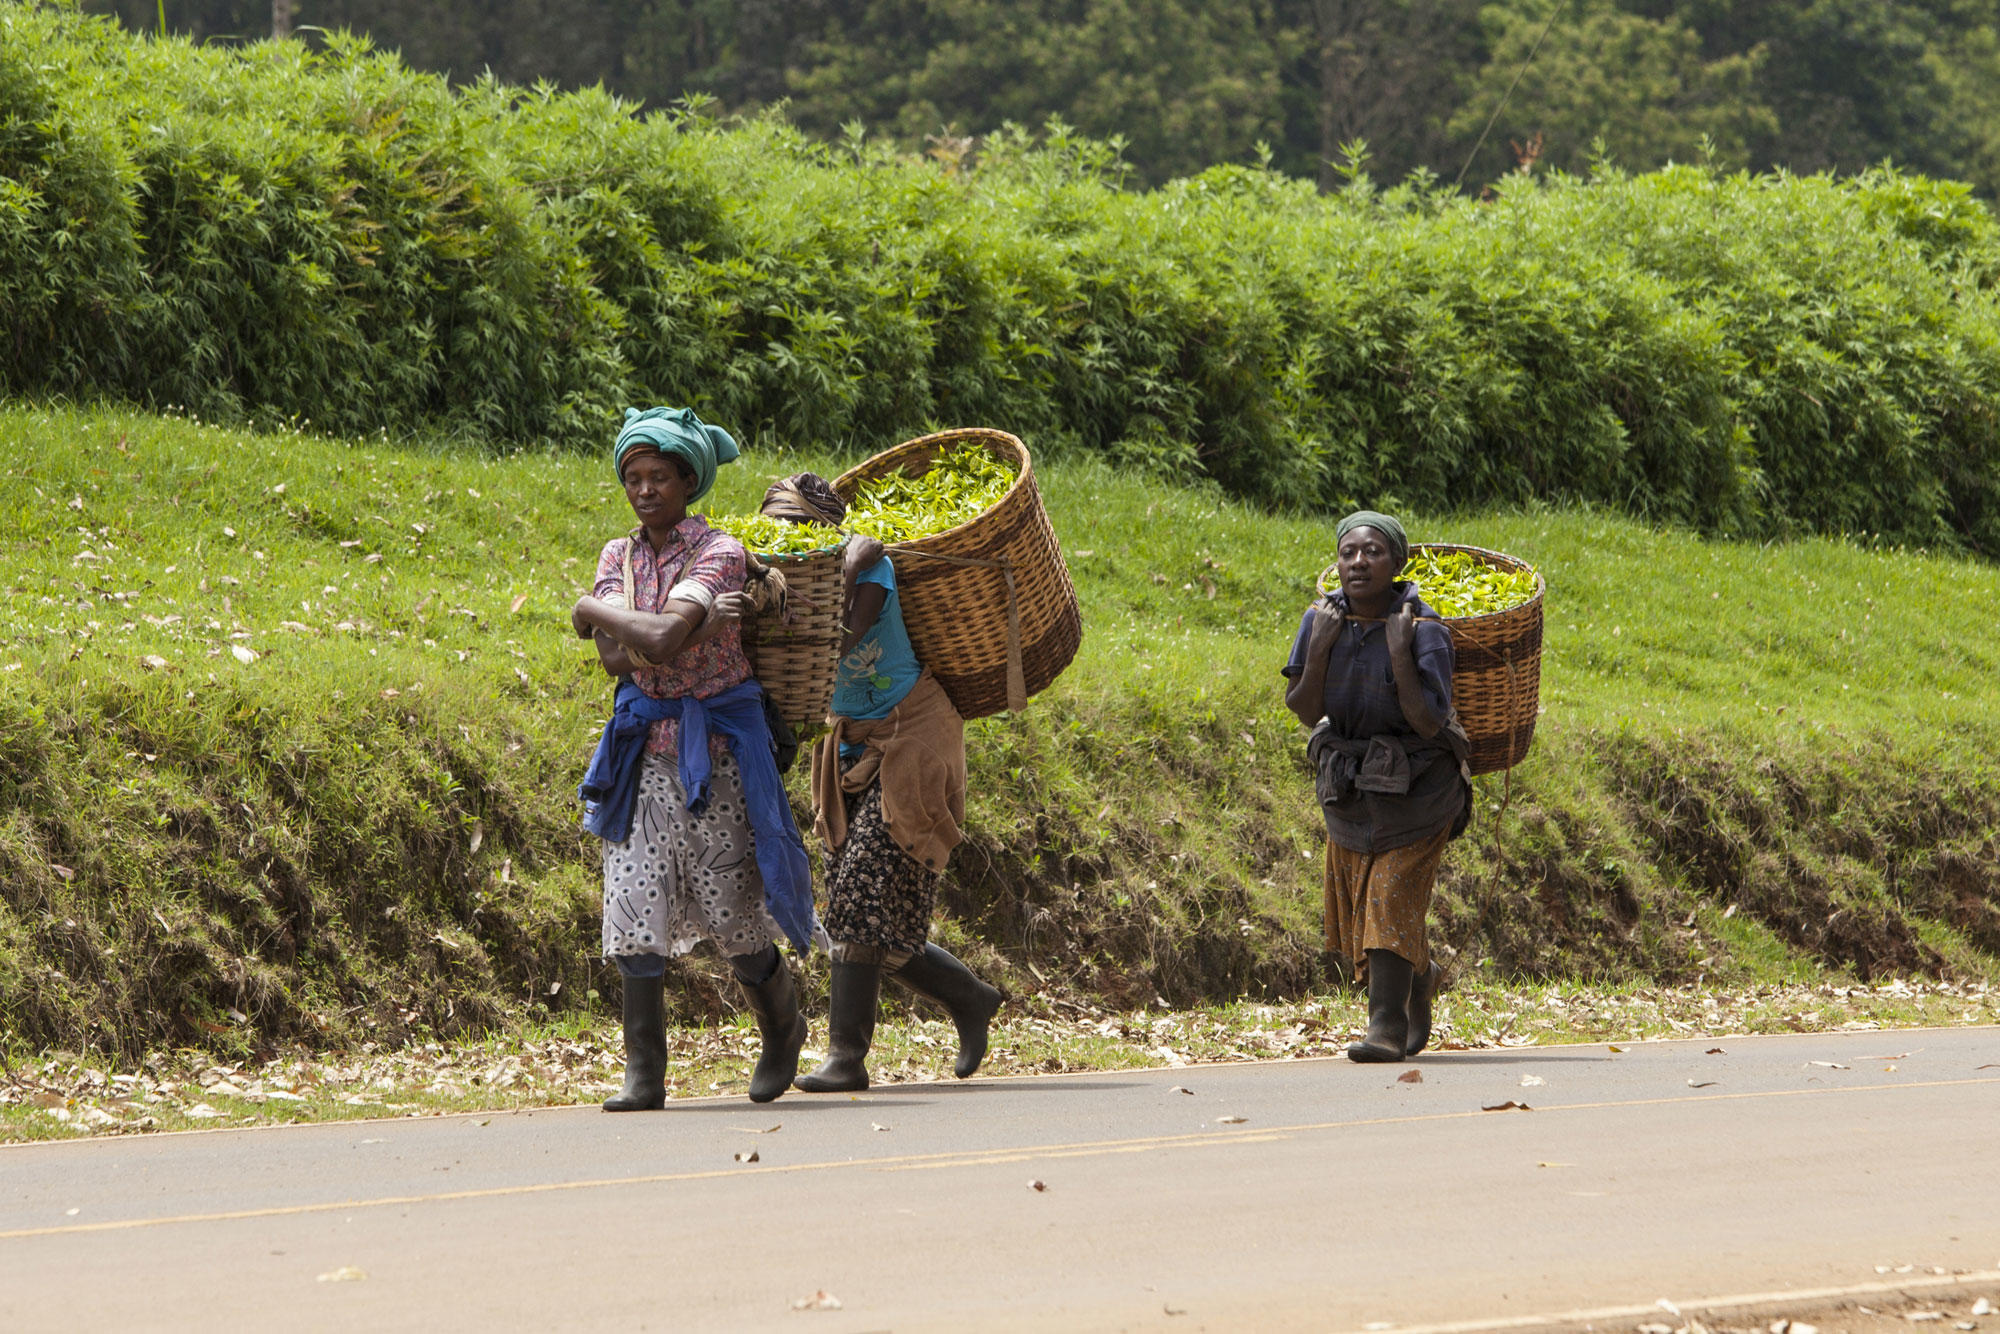 Workers in Kenya